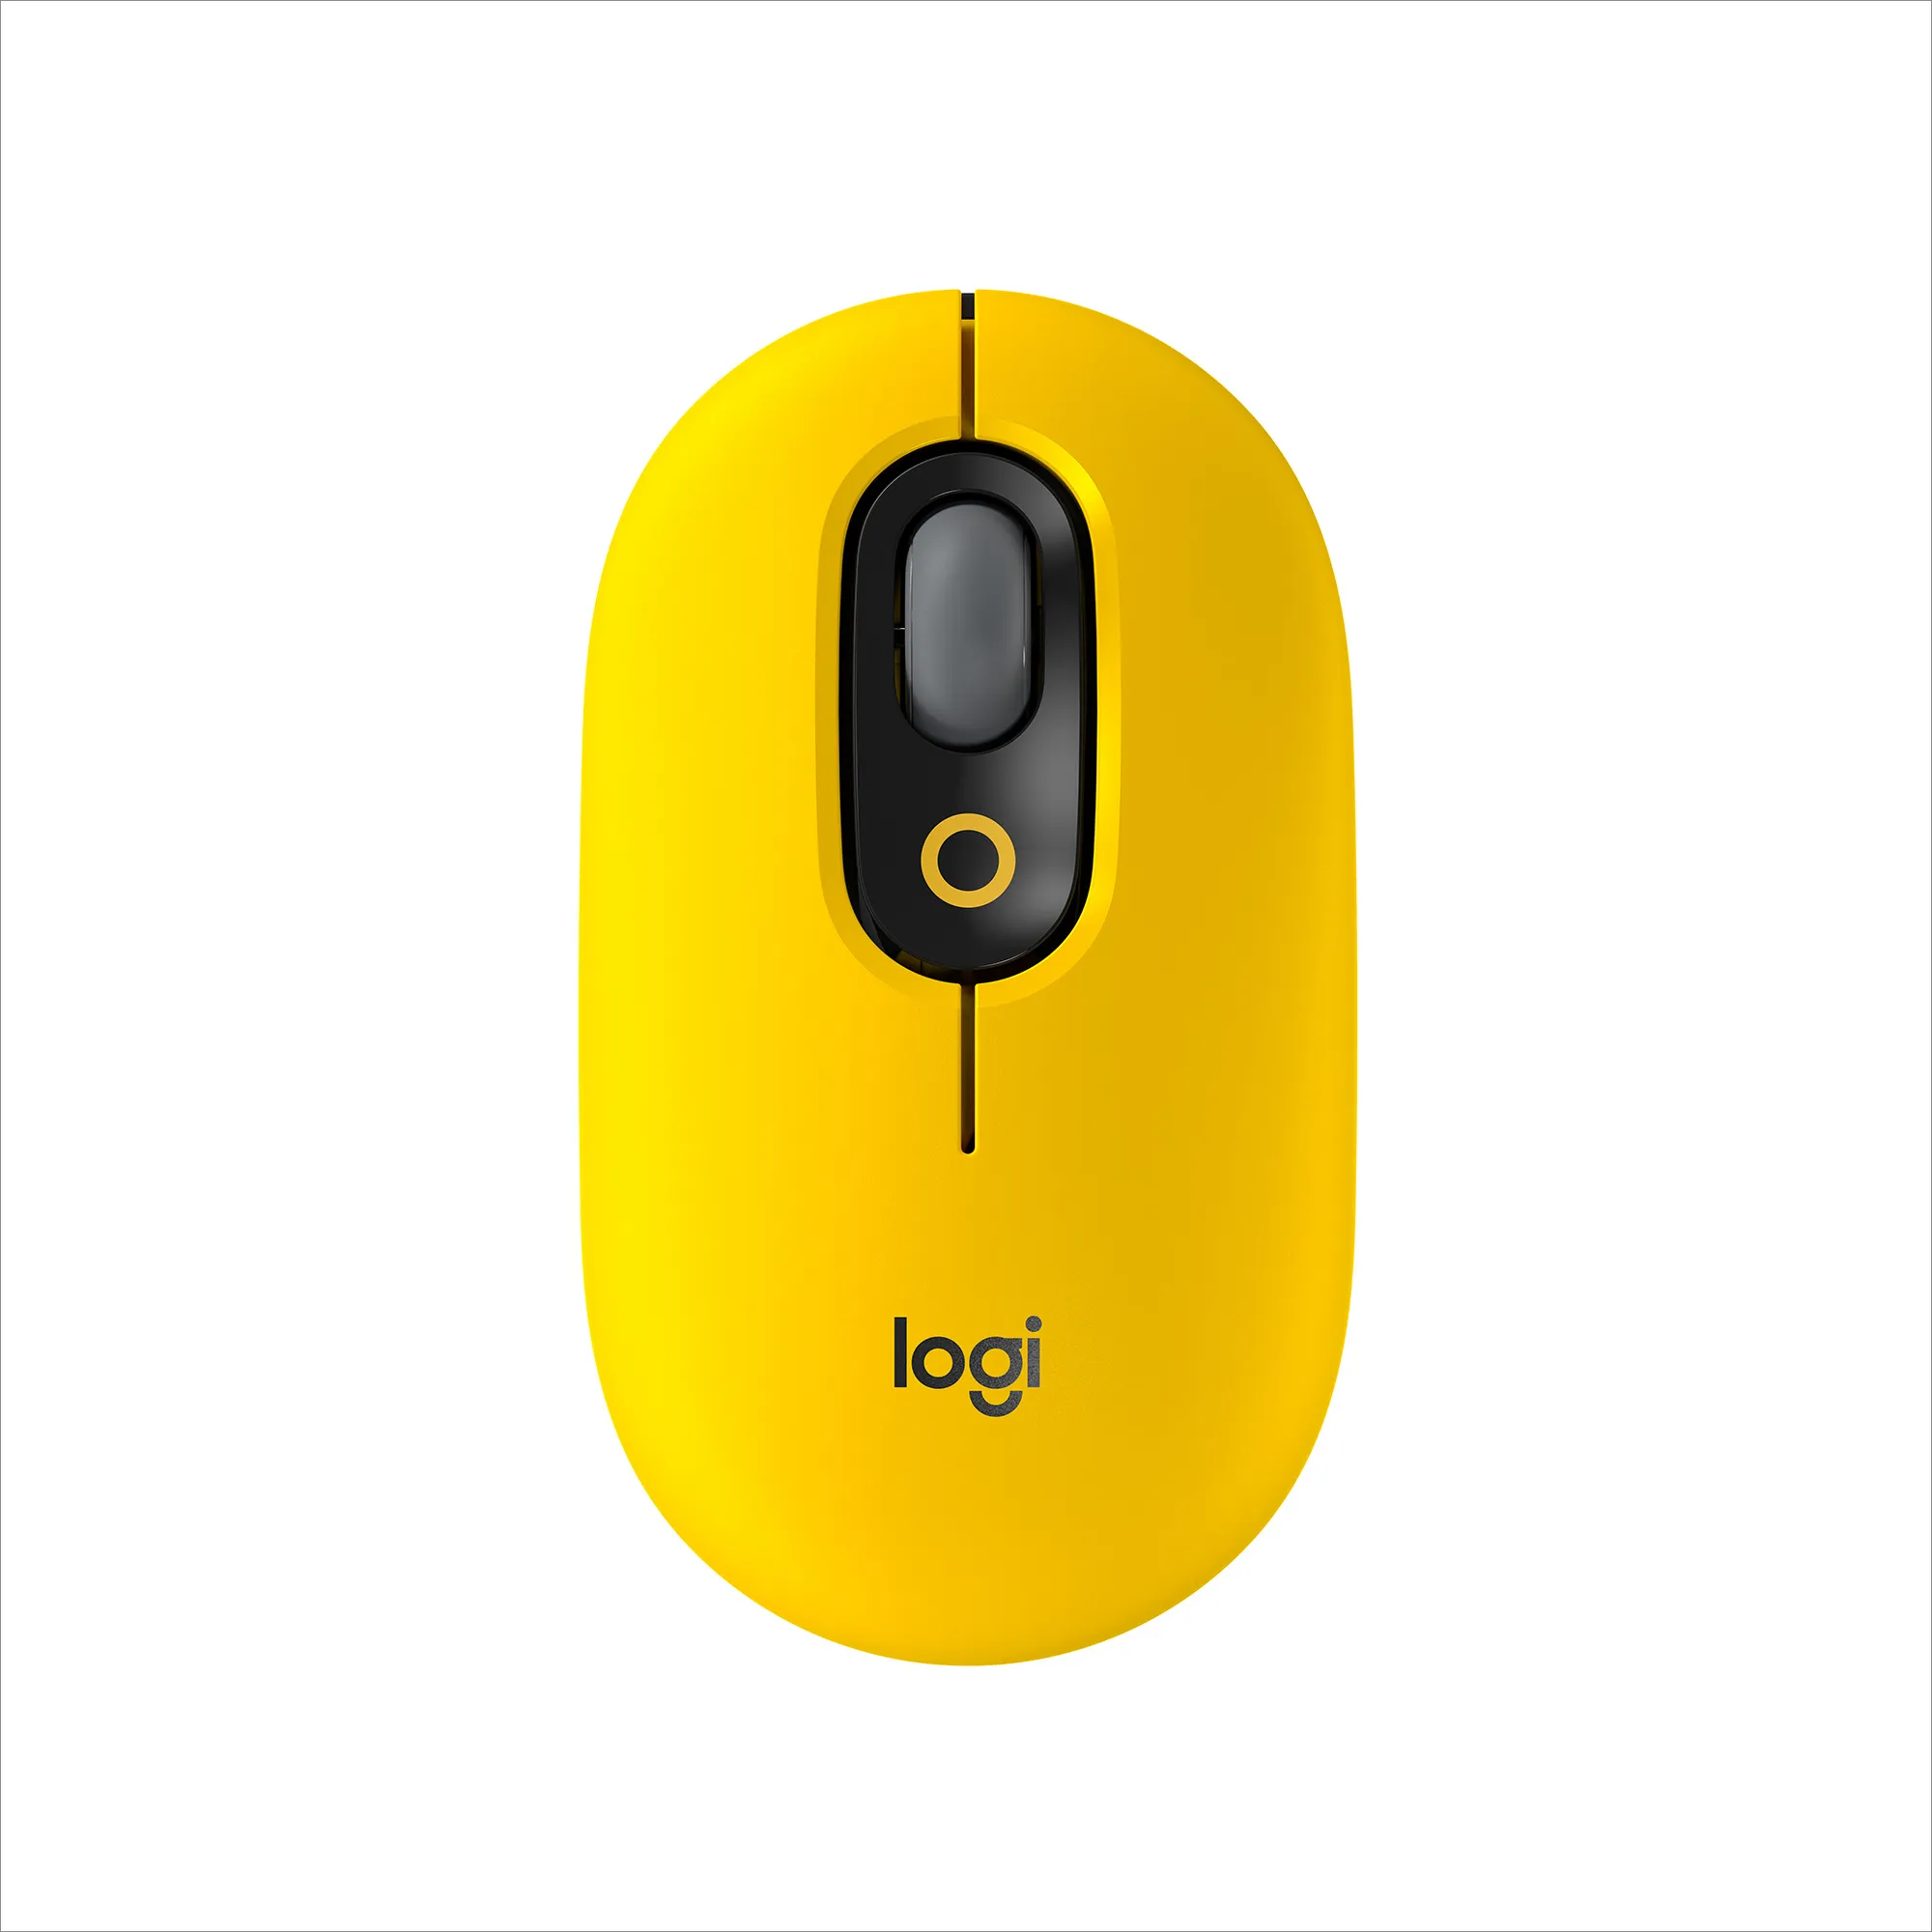  POP Mouse Wireless con Emoji personalizzabili, Tecnologia SilentTouch, Precisione e Velocità, Design Compatto, Bluetooth, USB, Multidispositivo, Compatibile OS - Blast